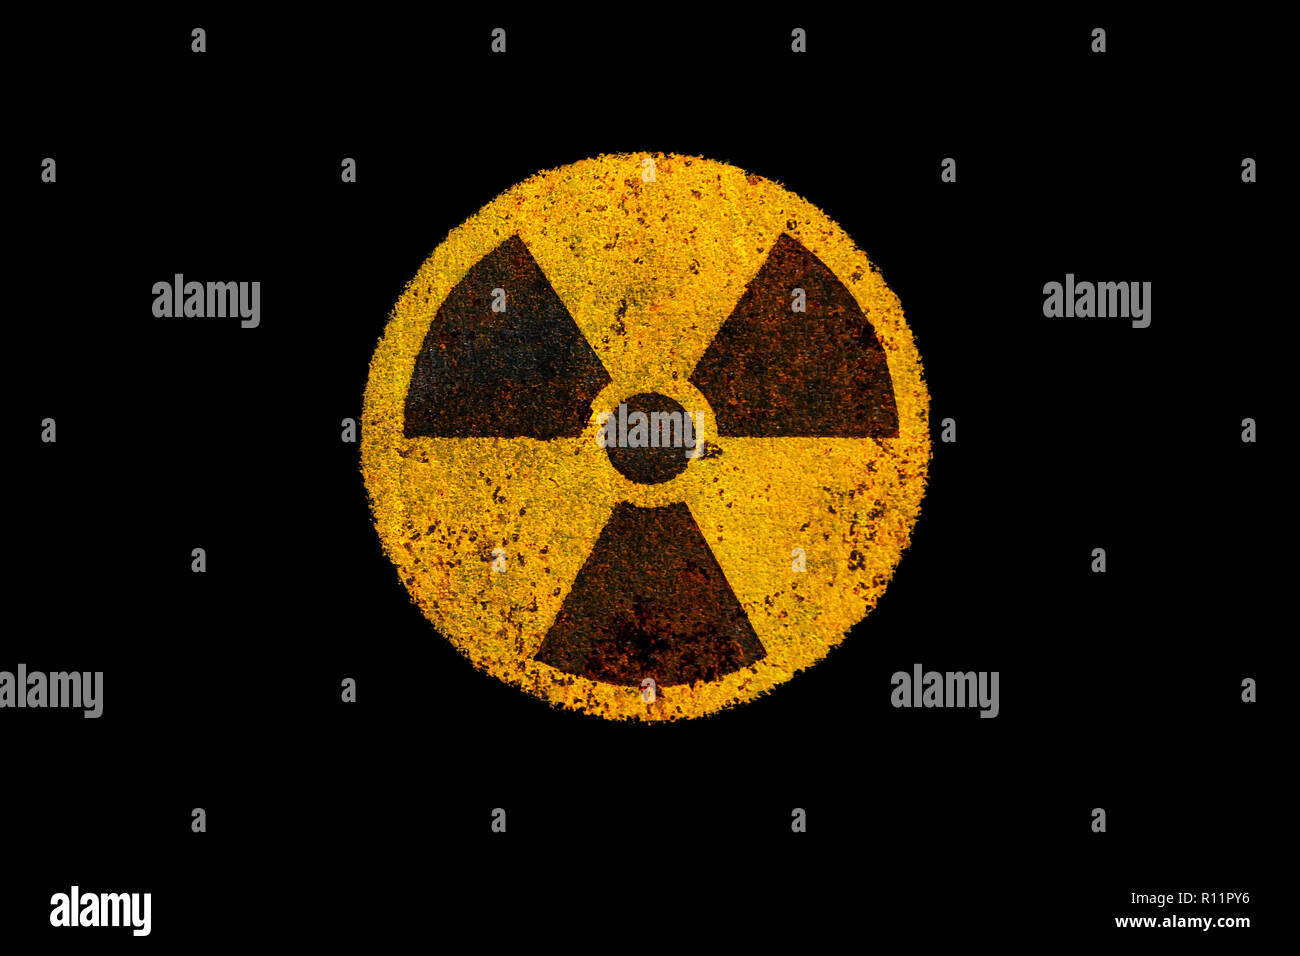 Runde gelbe und schwarze Radioaktivität (ionisierende Strahlung) nukleare Gefahr Symbol auf rostiges Metall grungy Textur und isoliert auf dunklen schwarzen Hintergrund. Stockfoto